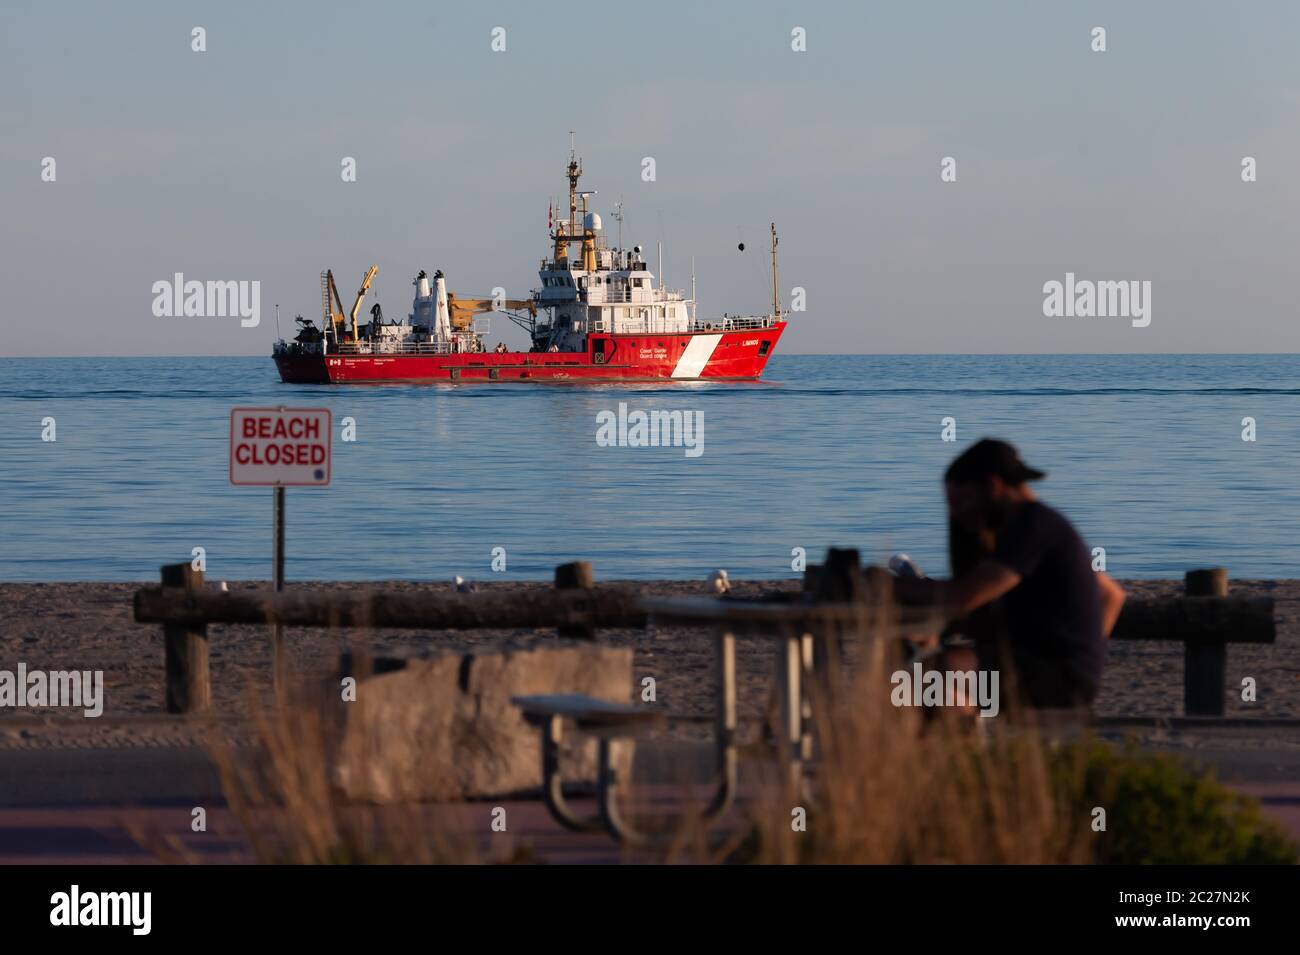 Port Stanley, Canada - 16 giugno 2020. La nave canadese della Guardia Costiera Limnos siede ancorata sul Lago Erie al largo della spiaggia a Port Stanley, mentre la nave e l'equipaggio conducono esercizi di addestramento. Mark Spowart/Alamy Live News. Foto Stock